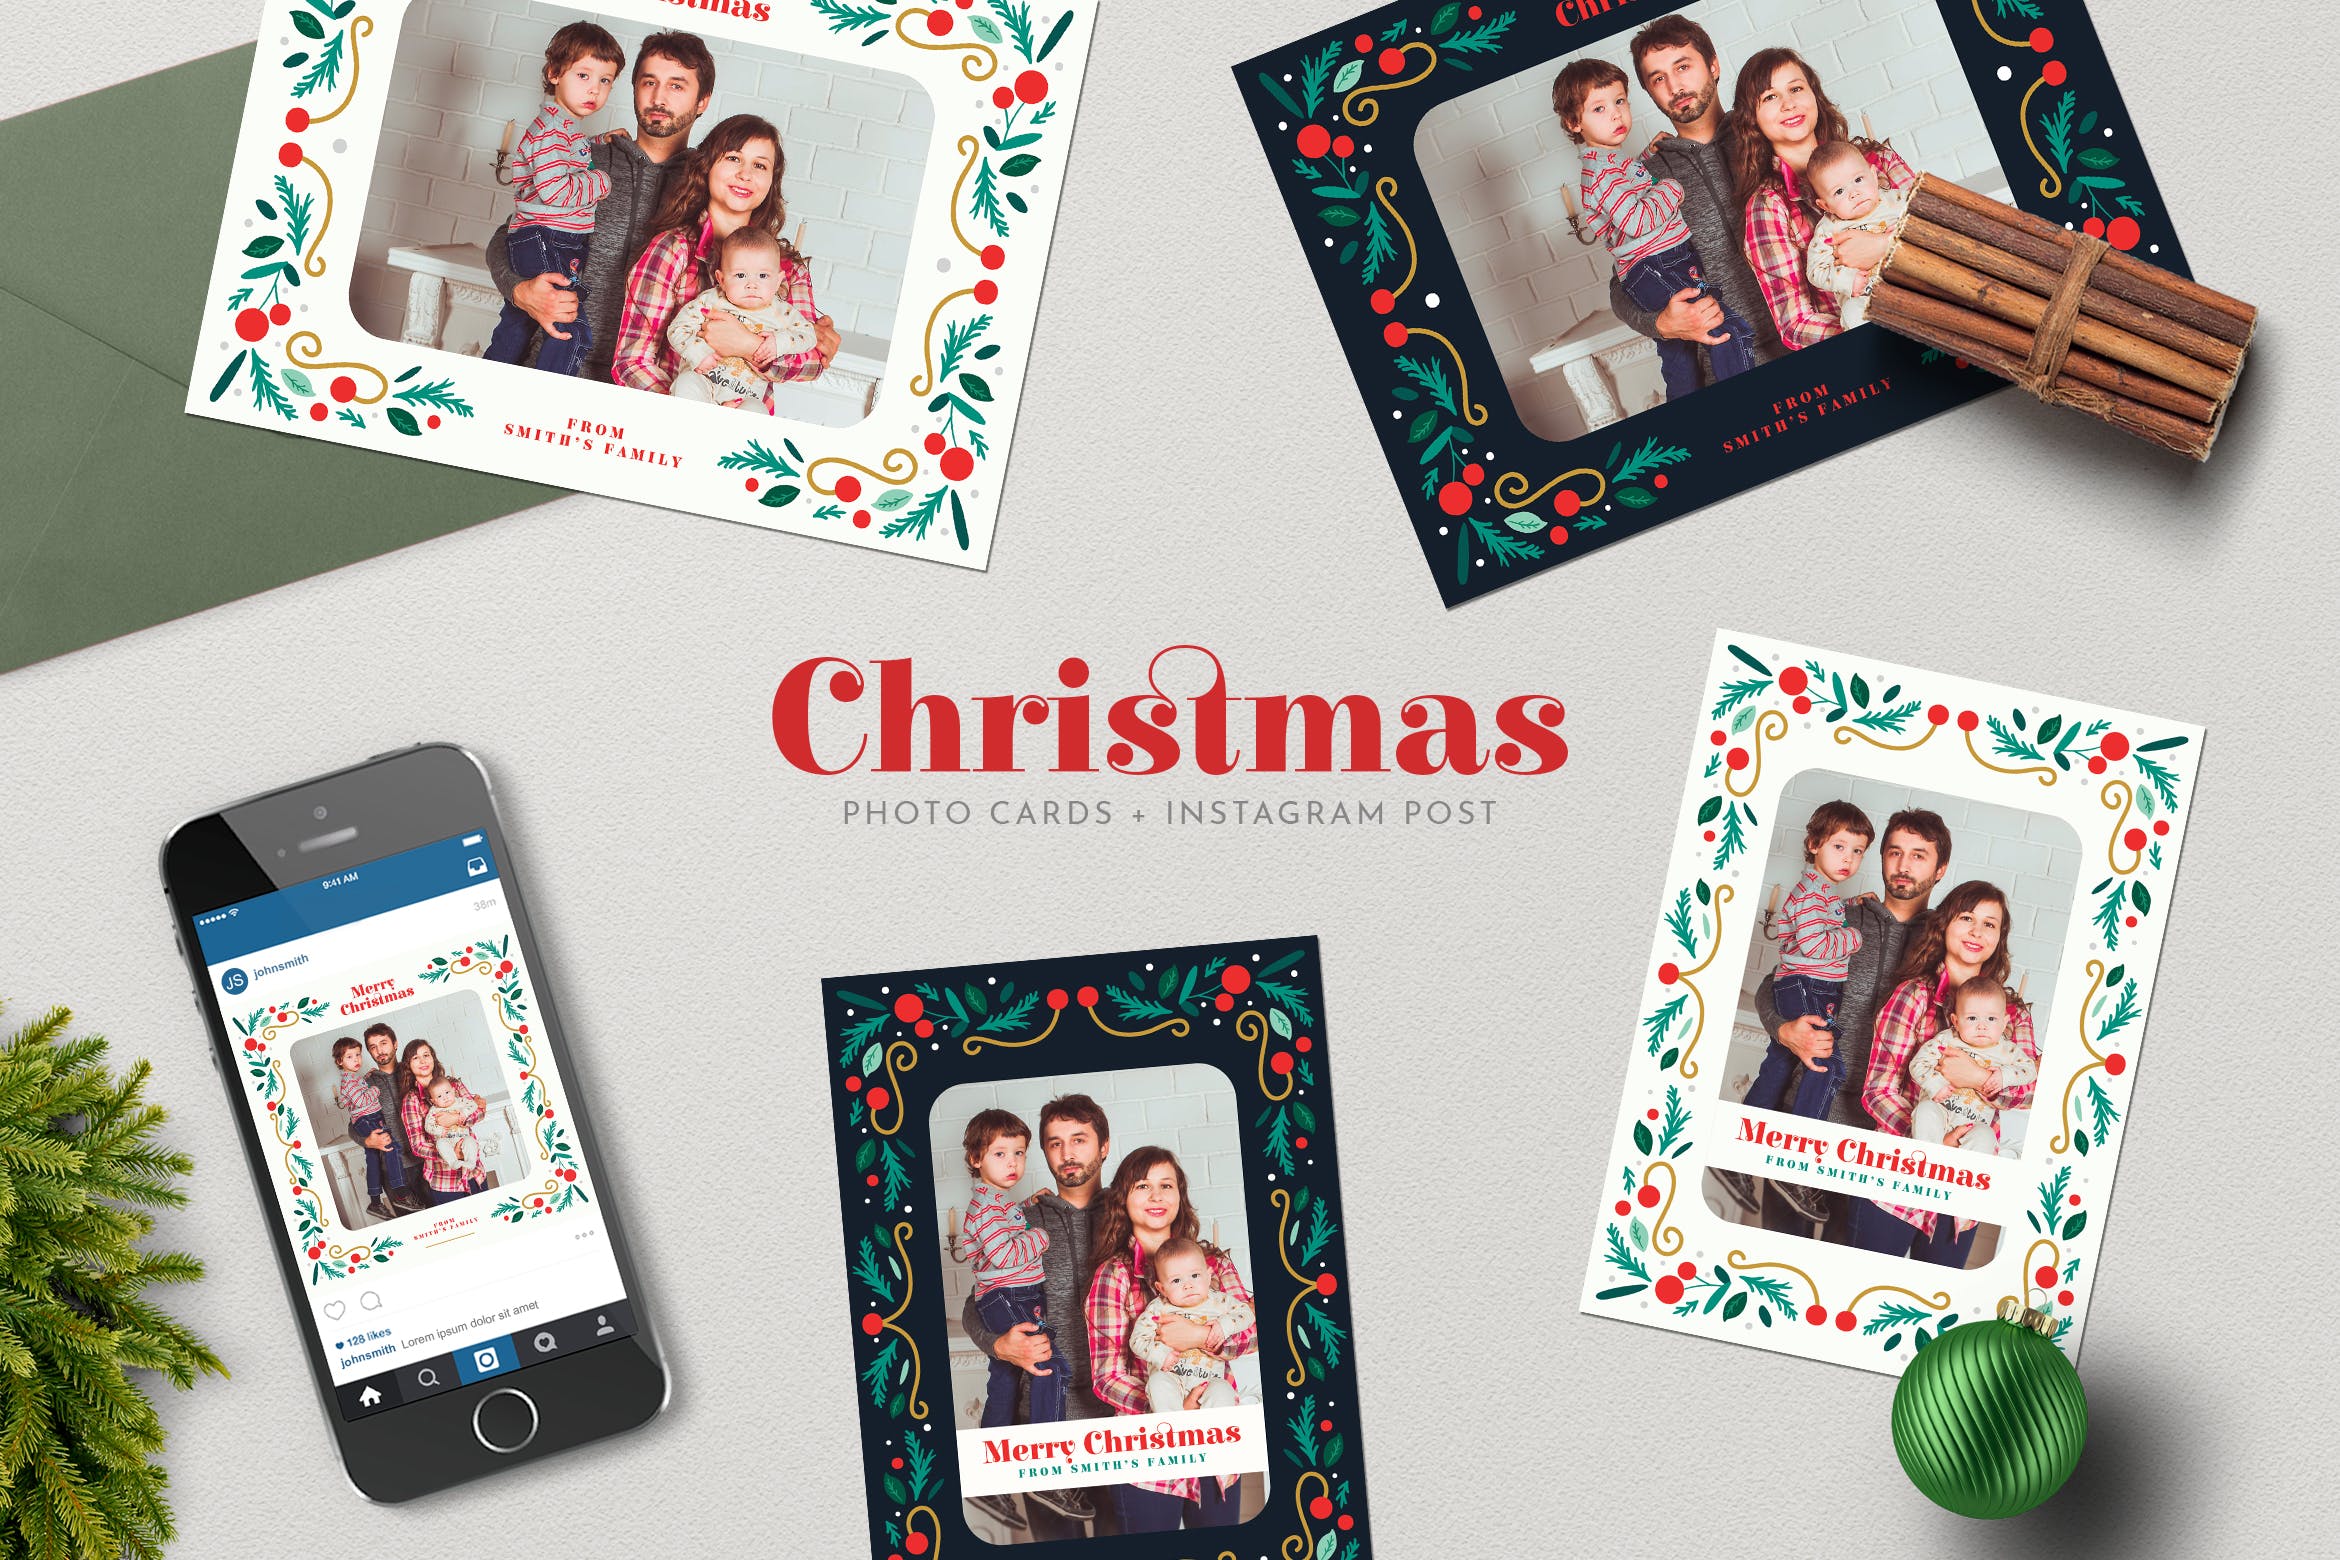 圣诞节照片明信片&Instagram贴图设计模板蚂蚁素材精选 Christmas PhotoCards +Instagram Post插图